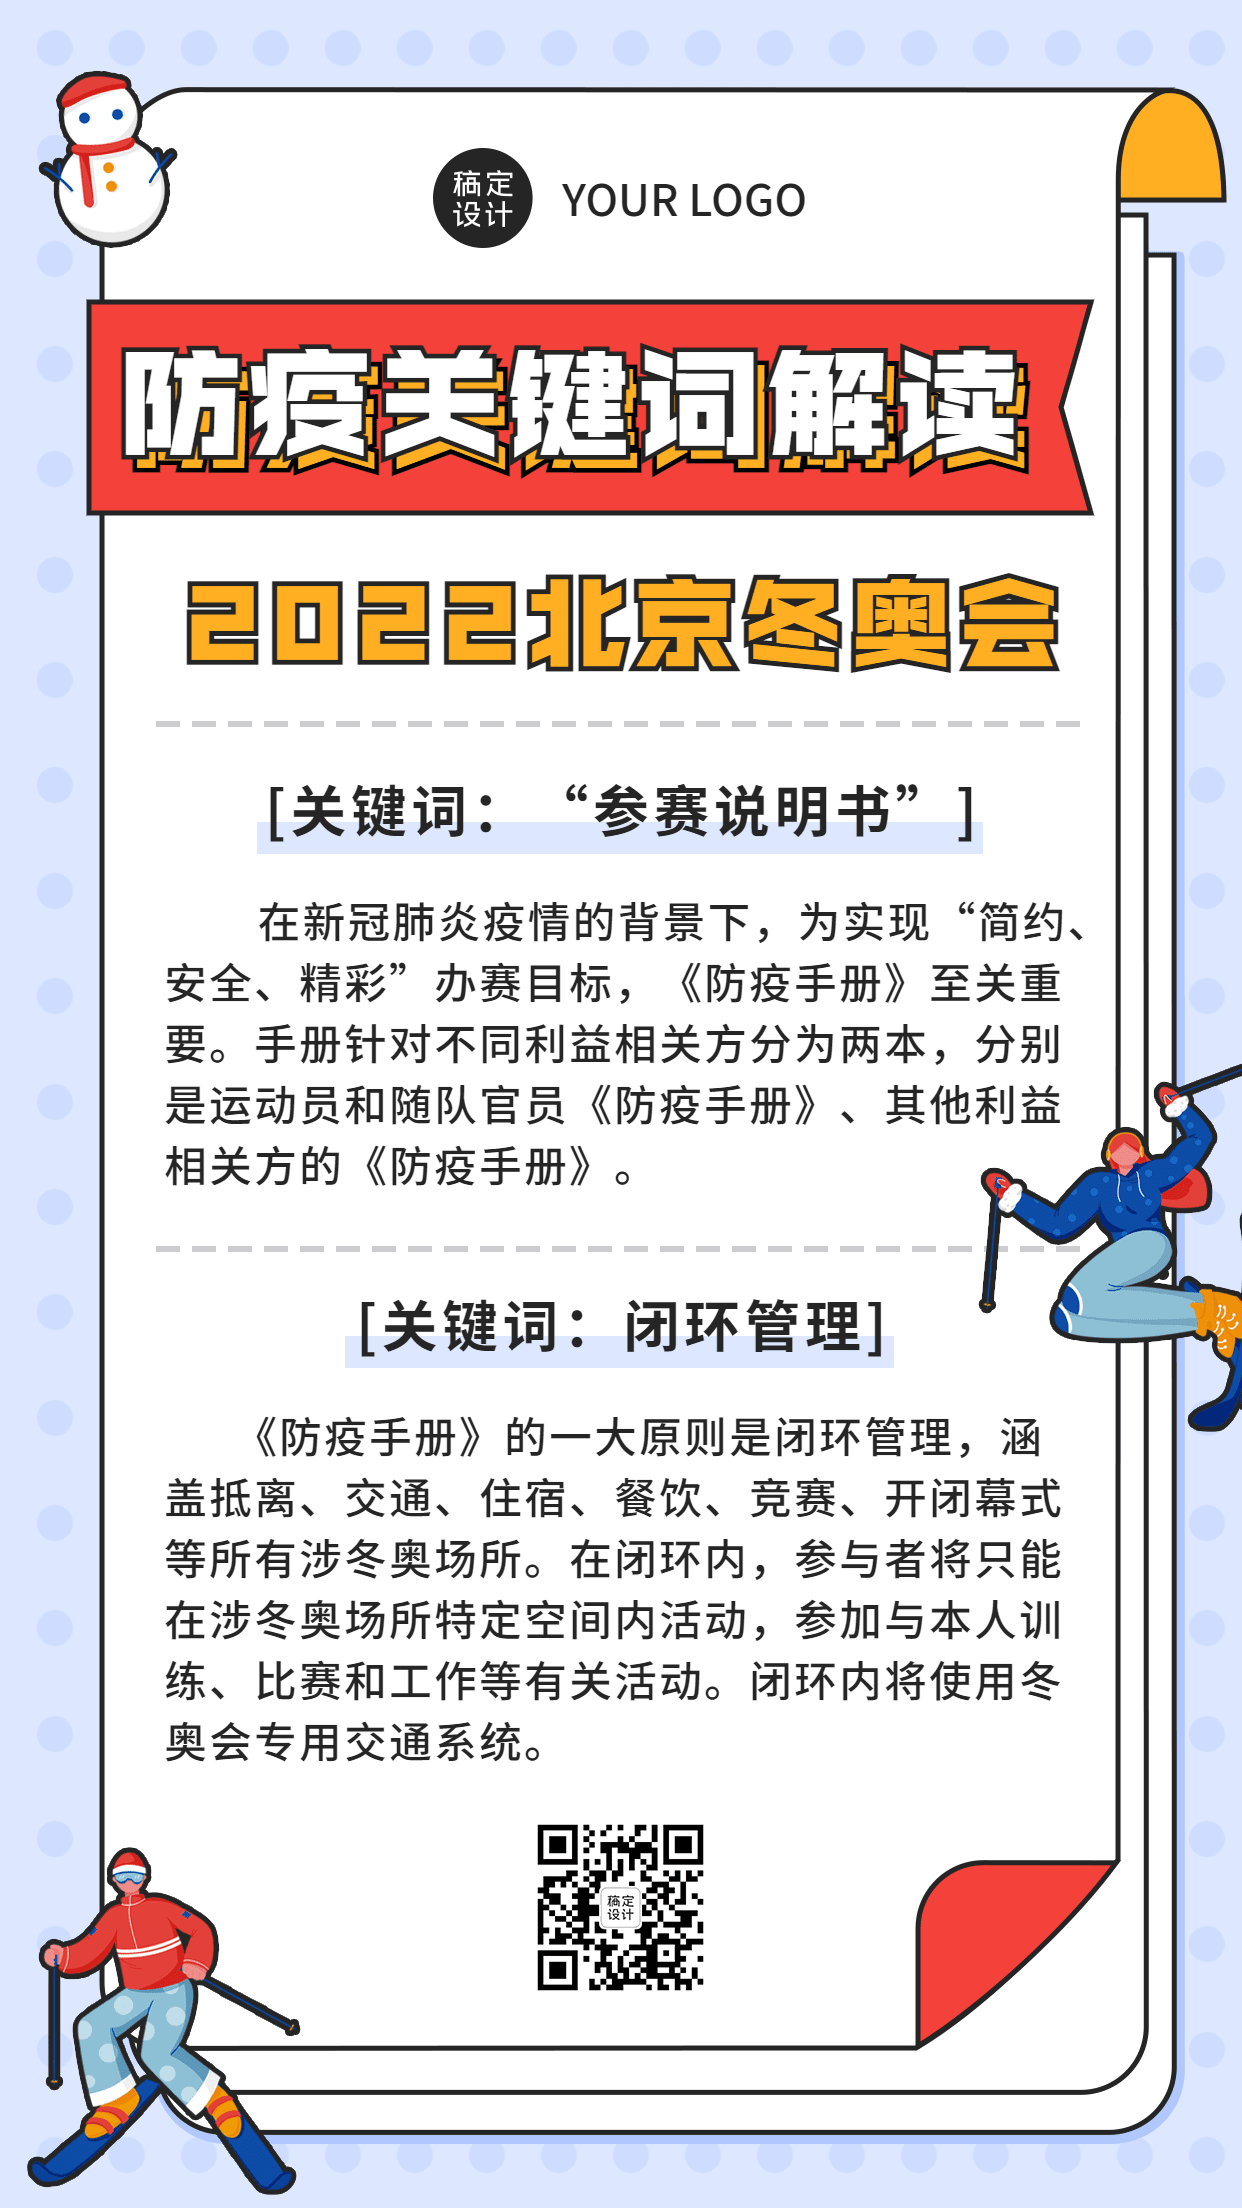 北京冬奥会疫情防控政策措施通知公告提示须知融媒体手机海报预览效果